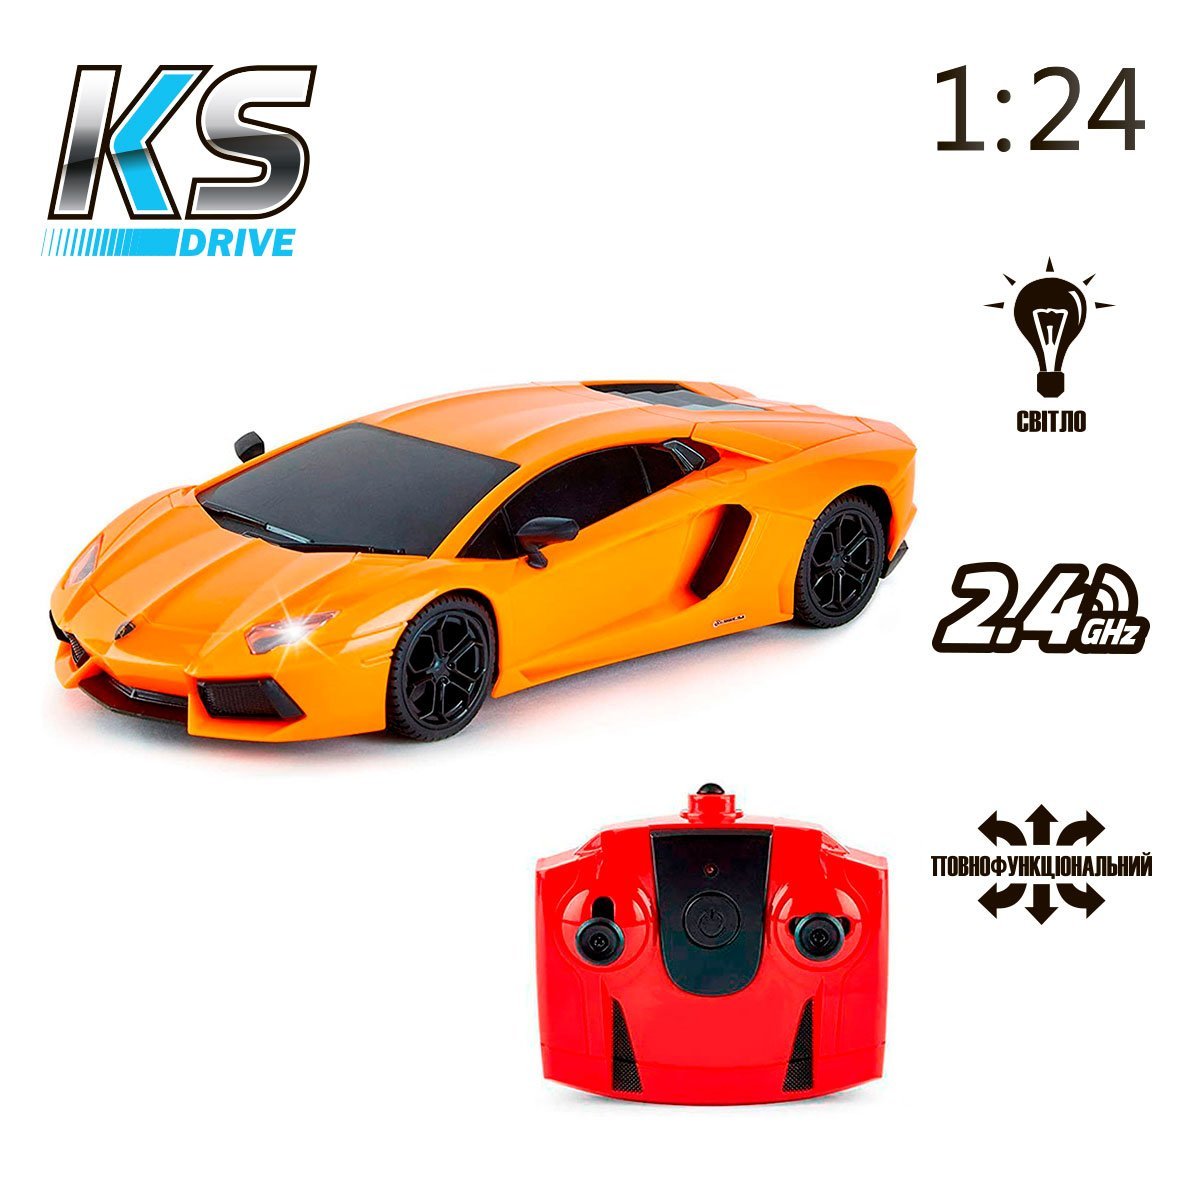 Автомобіль KS Drive на р/к Lamborghini Aventador LP 700-4, 1:24, 2.4Ghz помаранчевий (124GLBO) - фото 5